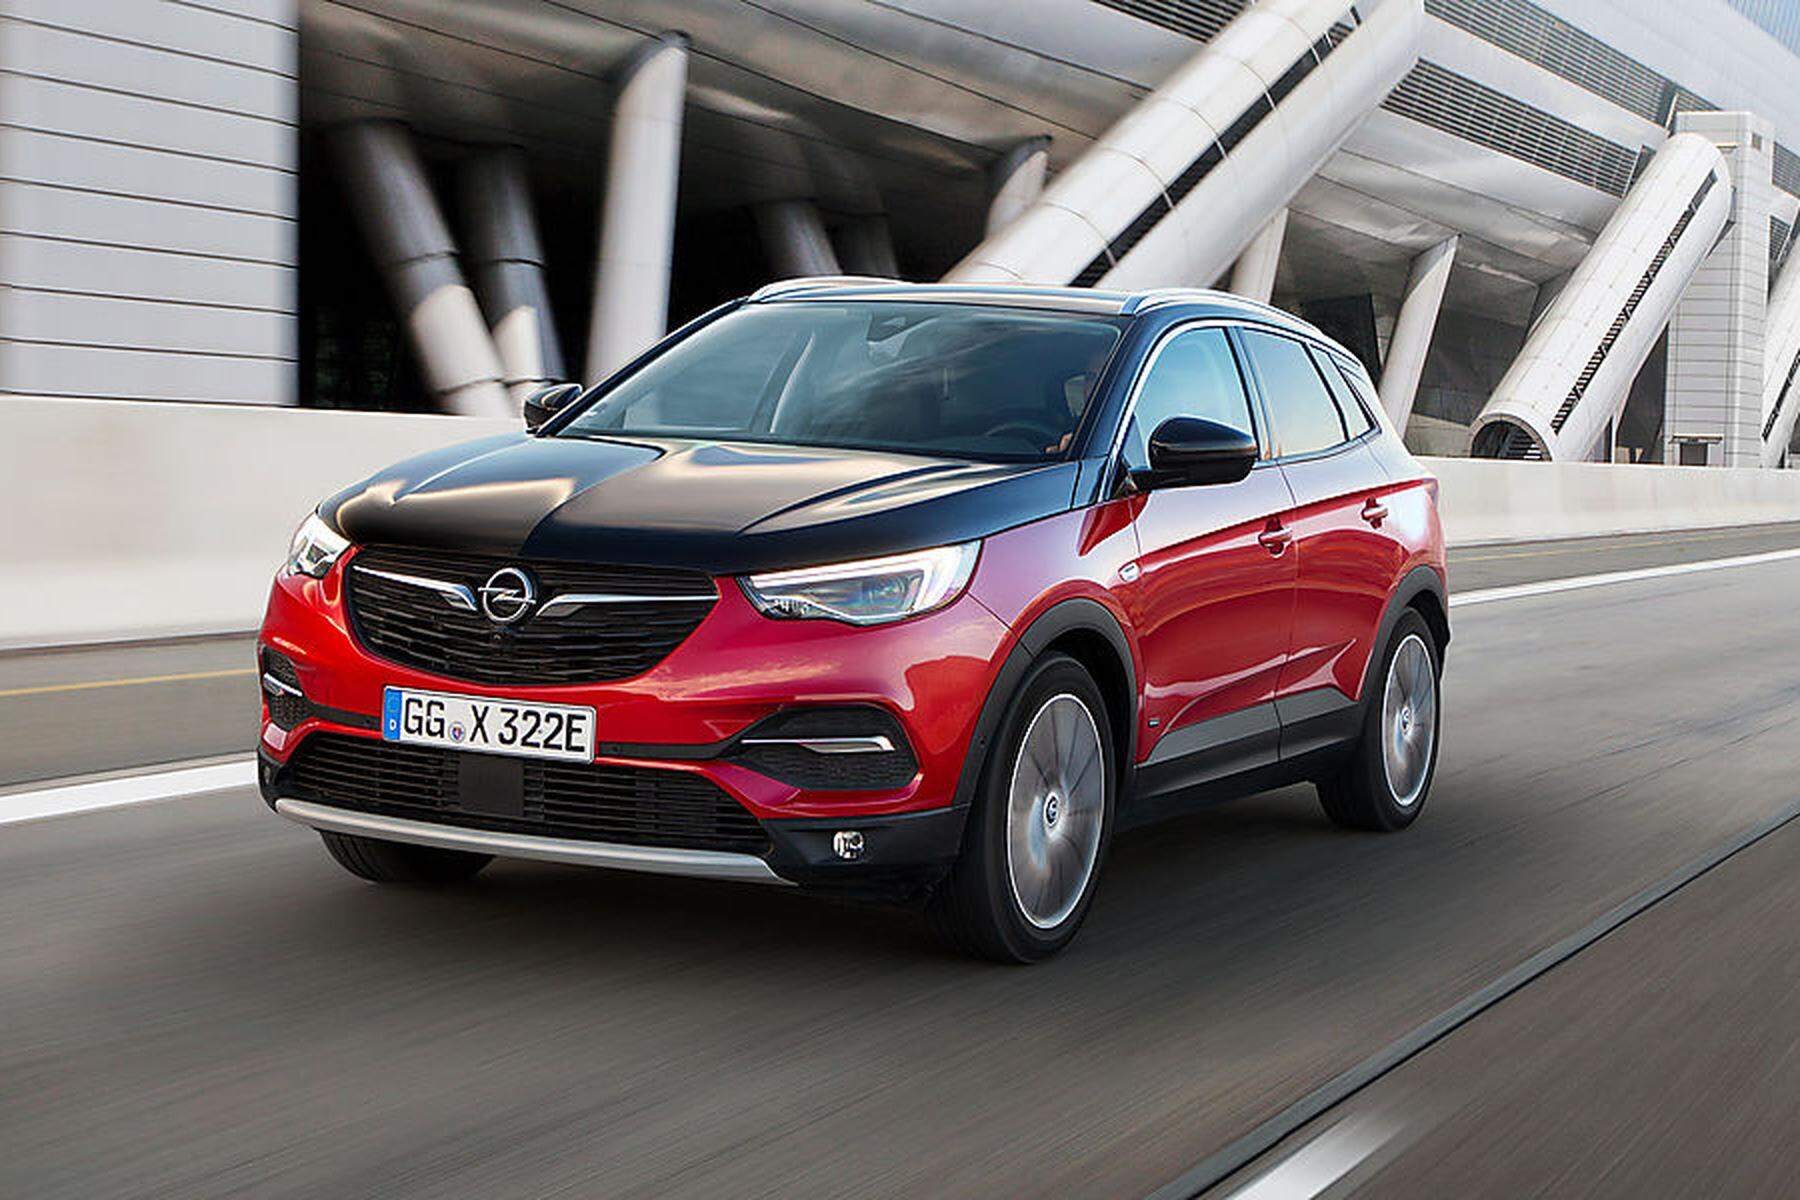 Modellpflege  Der Opel Grandland X kommt als Plug-in-Hybrid mit